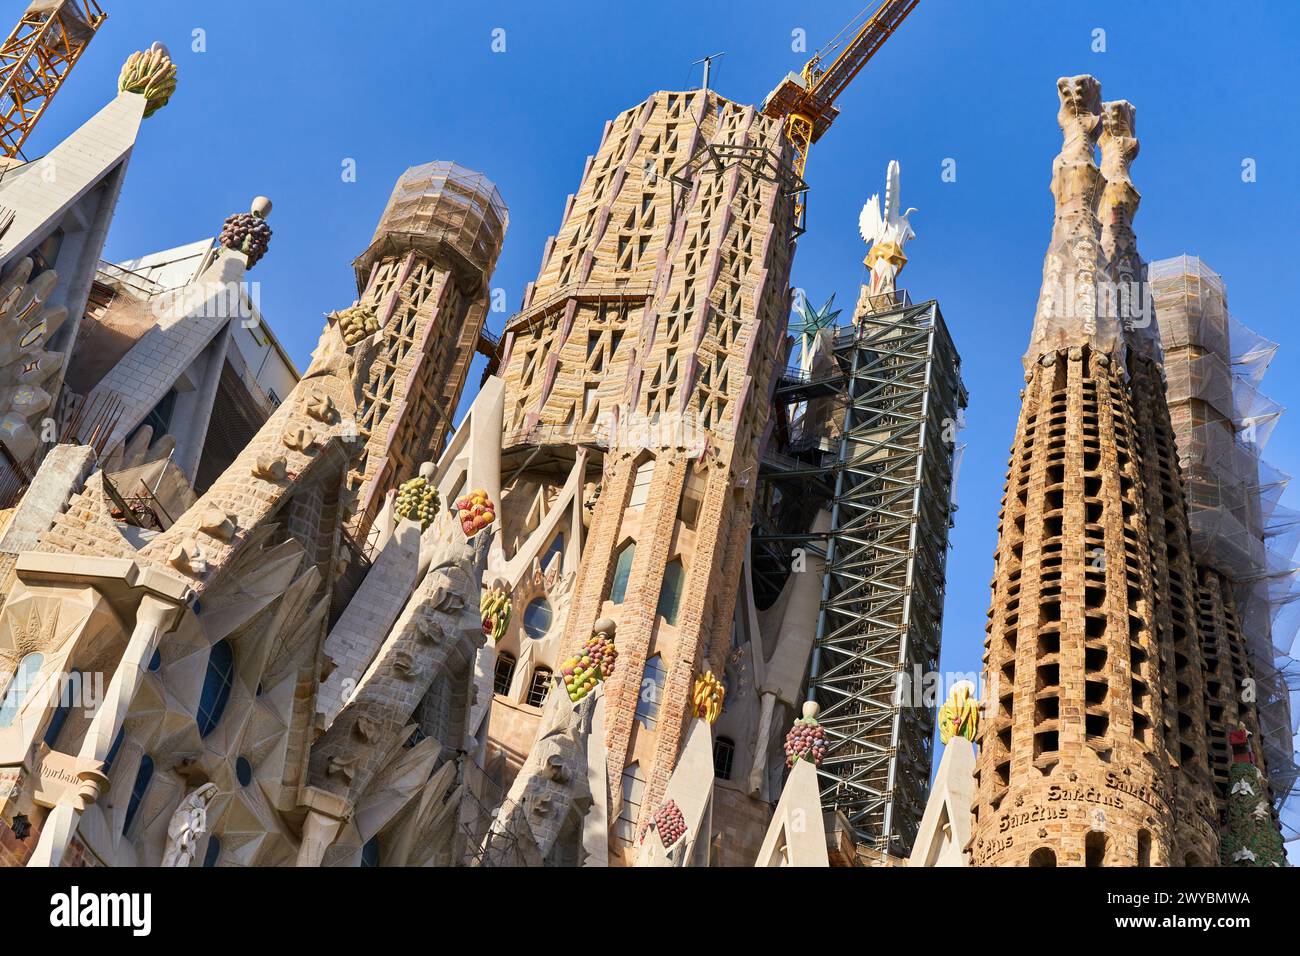 Basilique de la Sagrada Familia. Barcelone. Espagne.la basilique et église expiatoire de la Sainte famille est une grande église catholique romaine de Barcelone, conçue par l'architecte espagnol catalan Antoni Gaudí (18521926). Banque D'Images